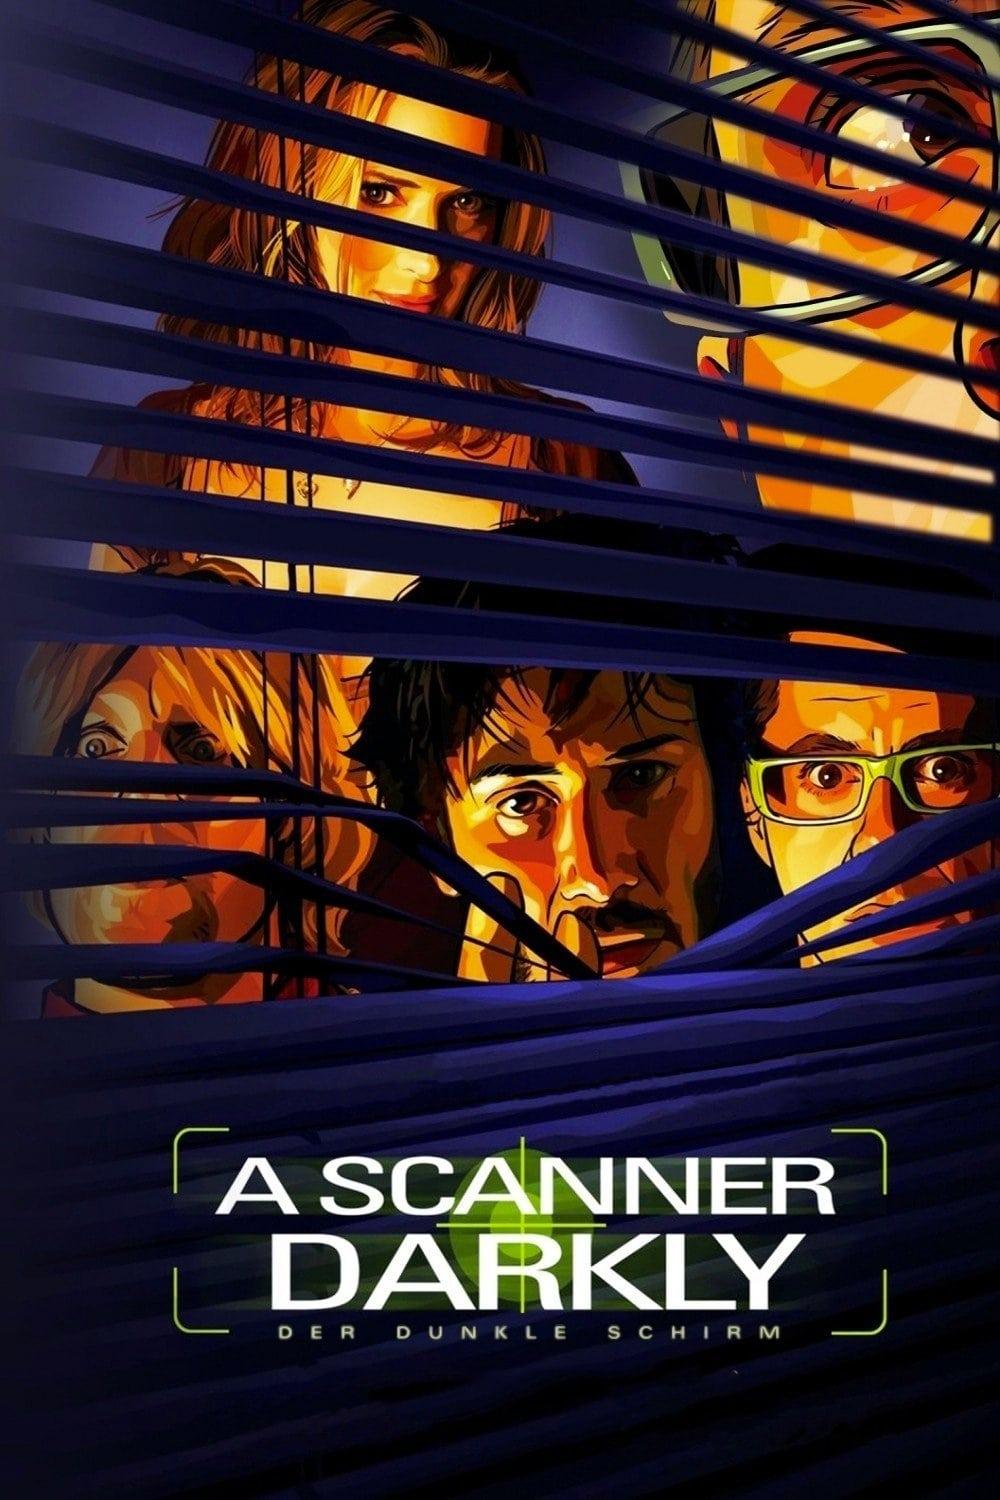 A Scanner Darkly - Der dunkle Schirm poster